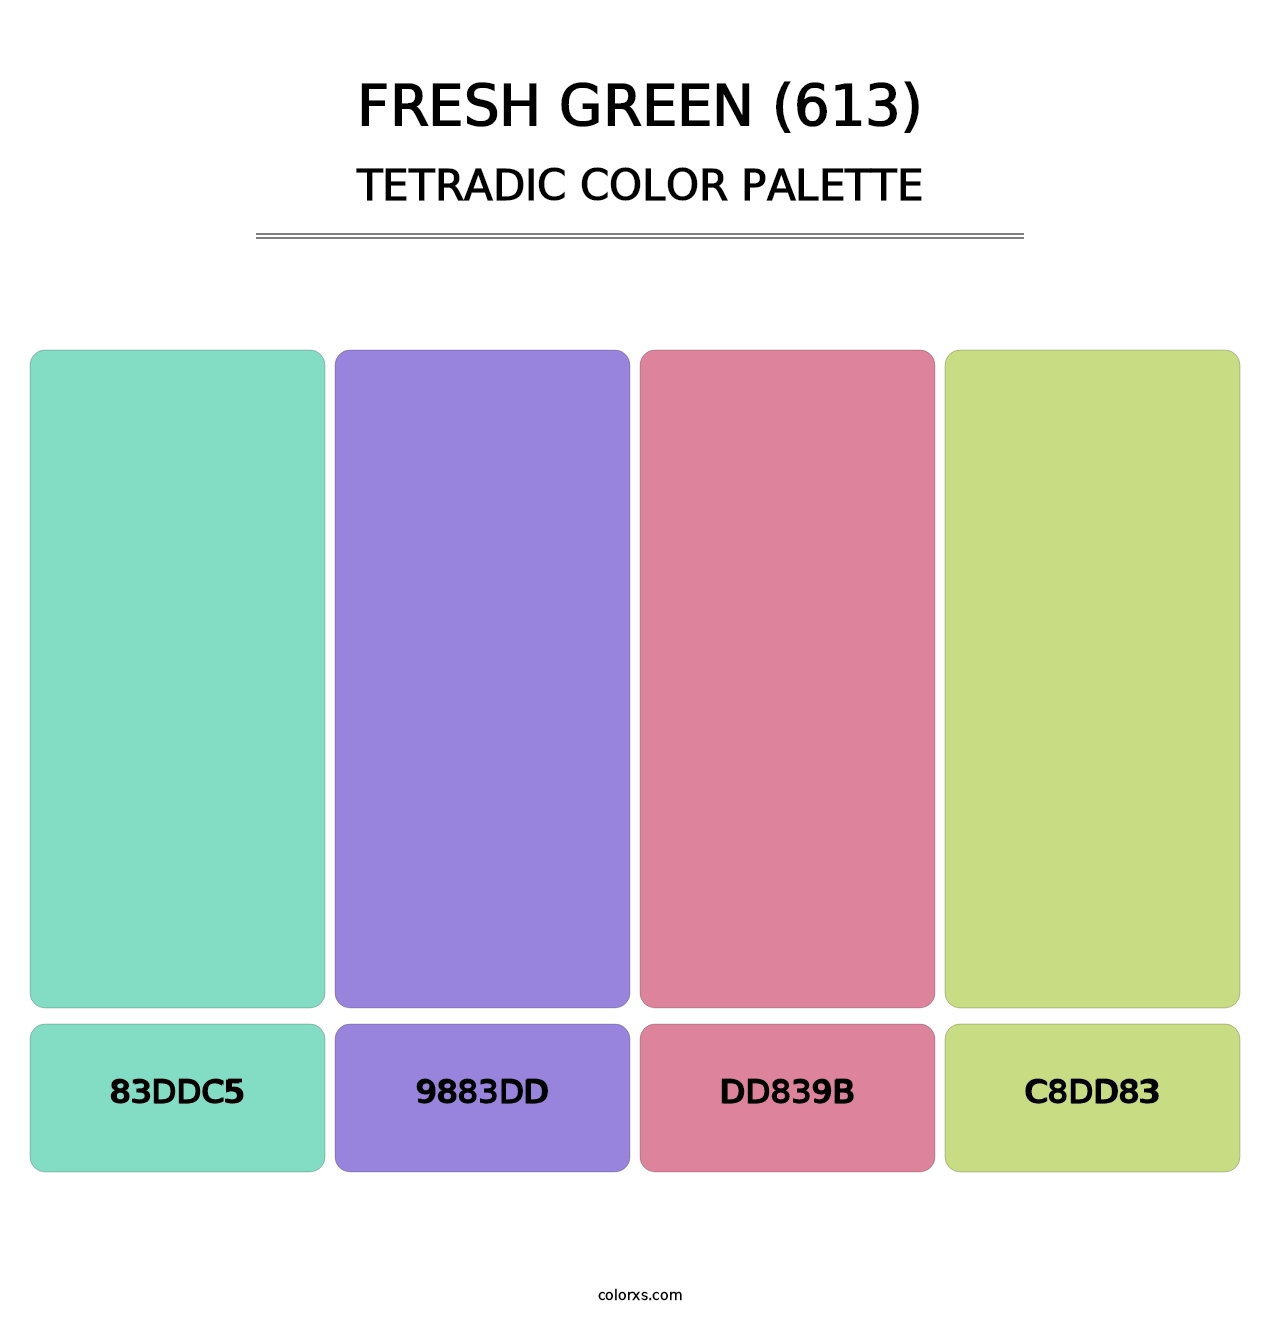 Fresh Green (613) - Tetradic Color Palette